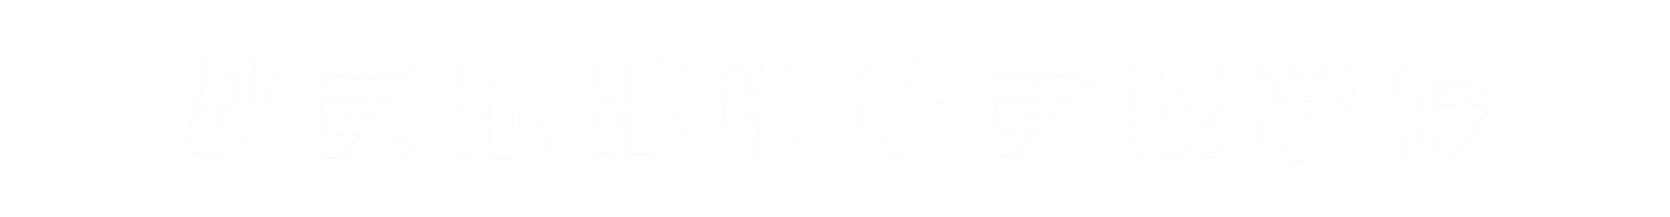 梦竞未来珠海banner字